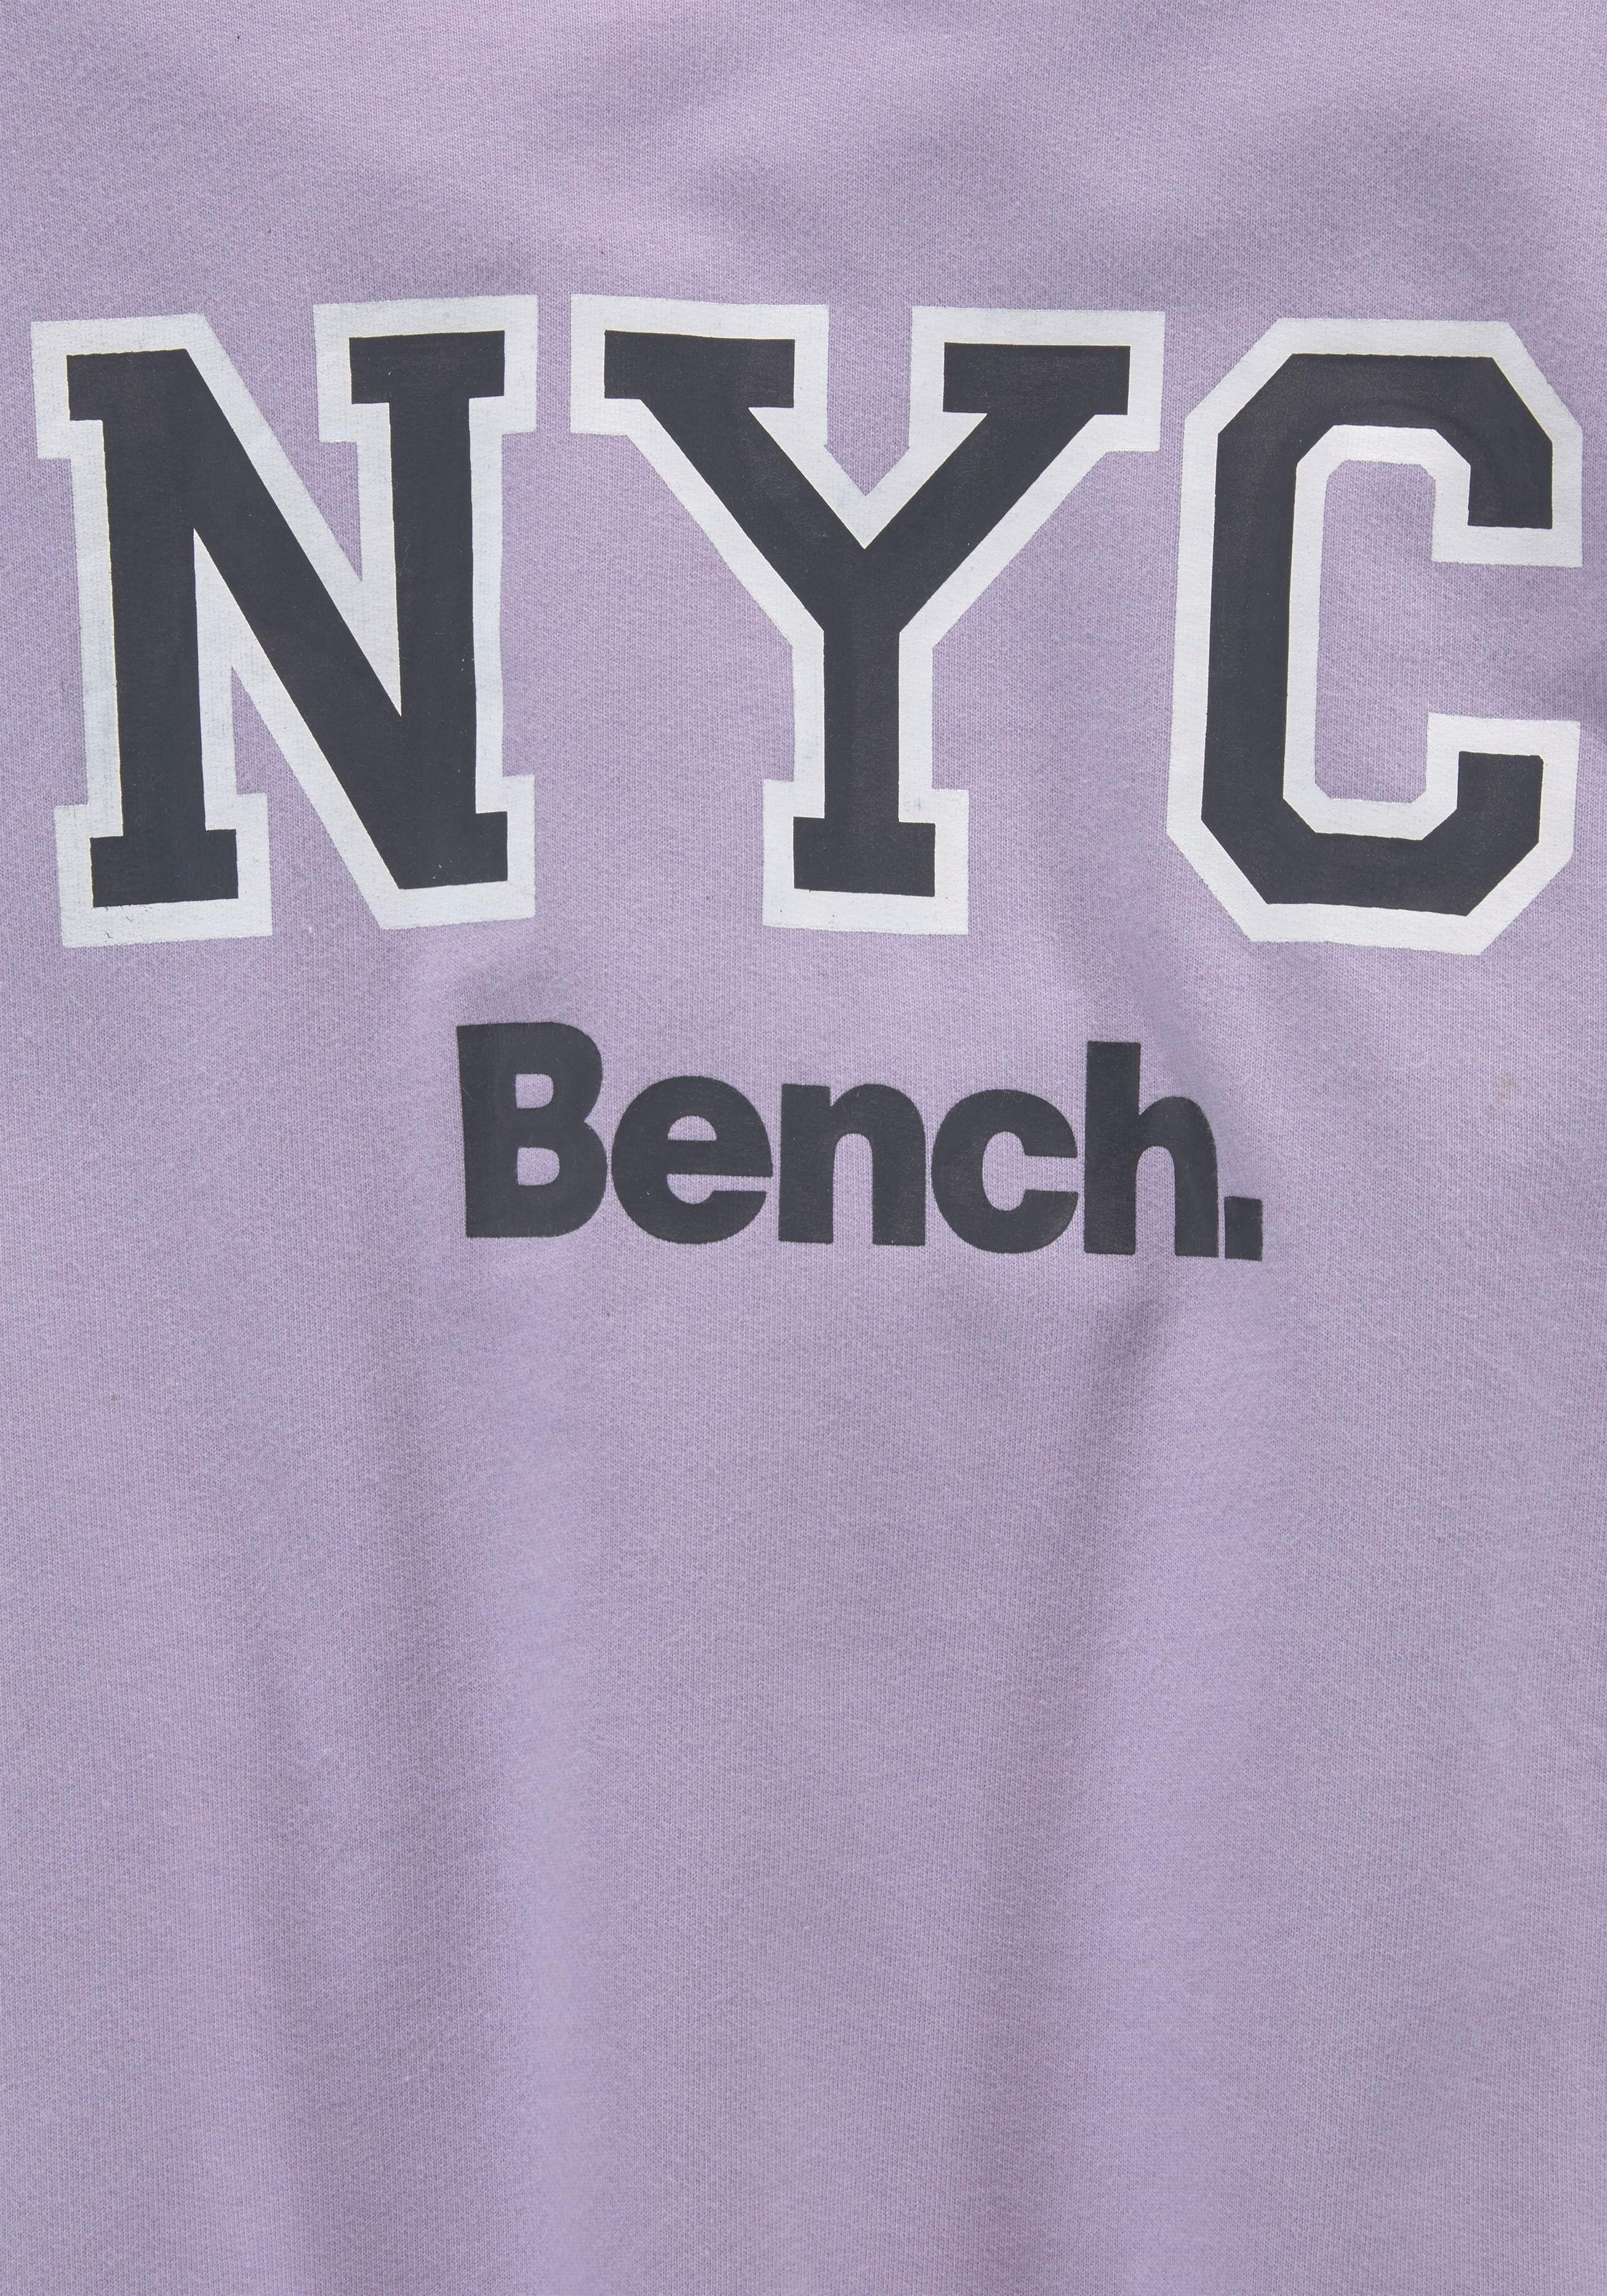 für - Ärmel Sweatshirt, Bench. ▷ oversize Logo-Print am mit | BAUR